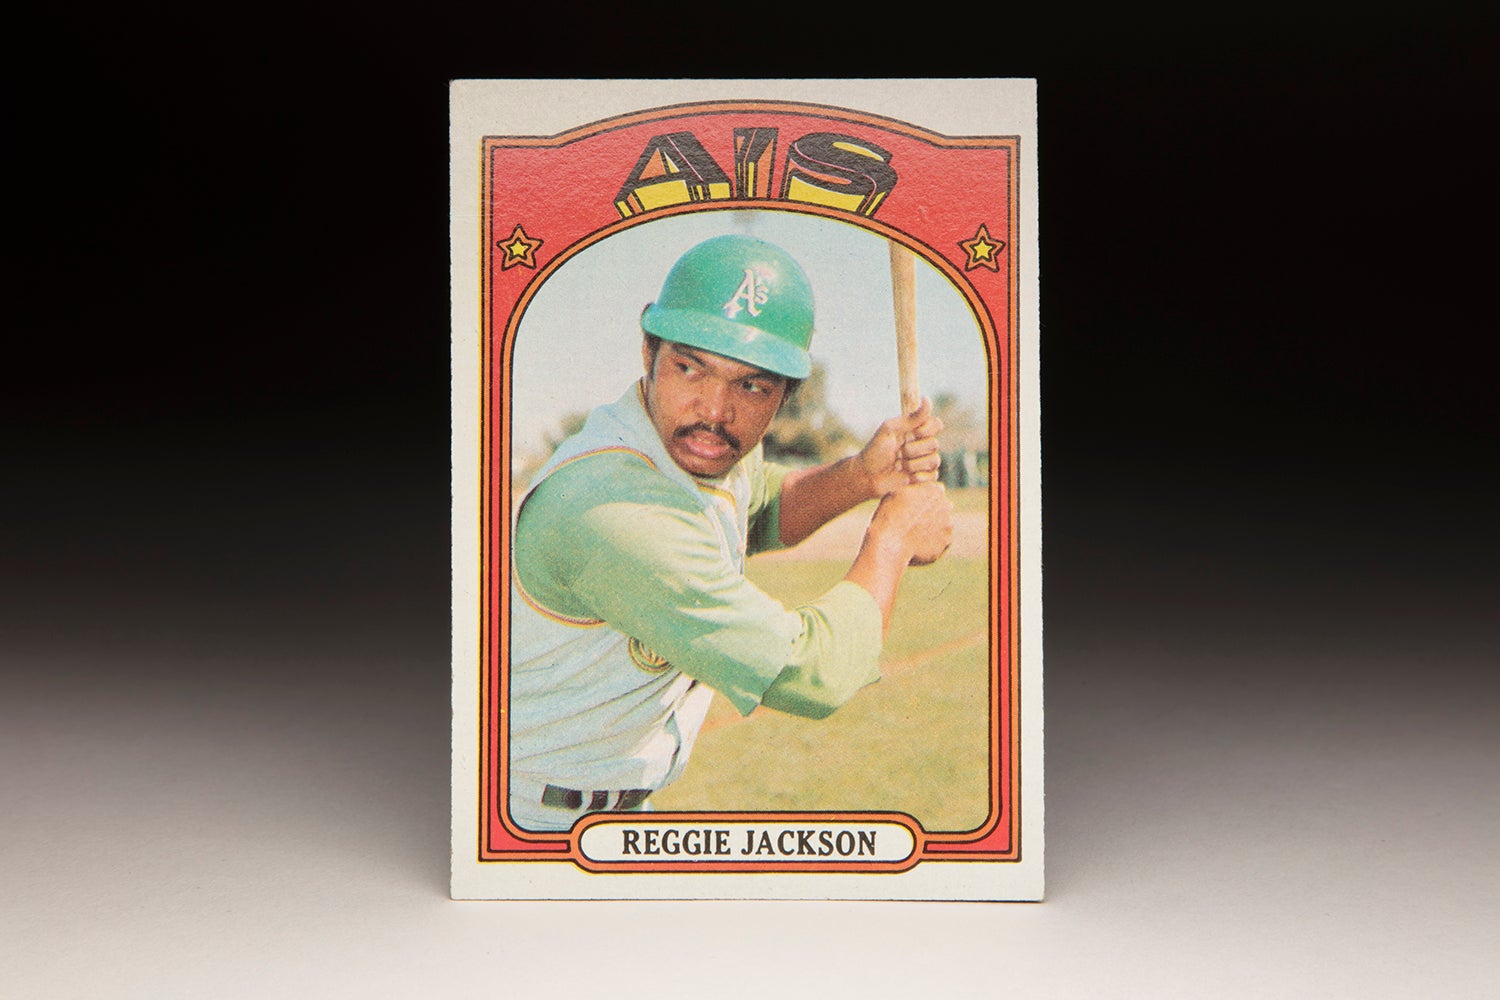 #CardCorner: 1972 Topps Reggie Jackson